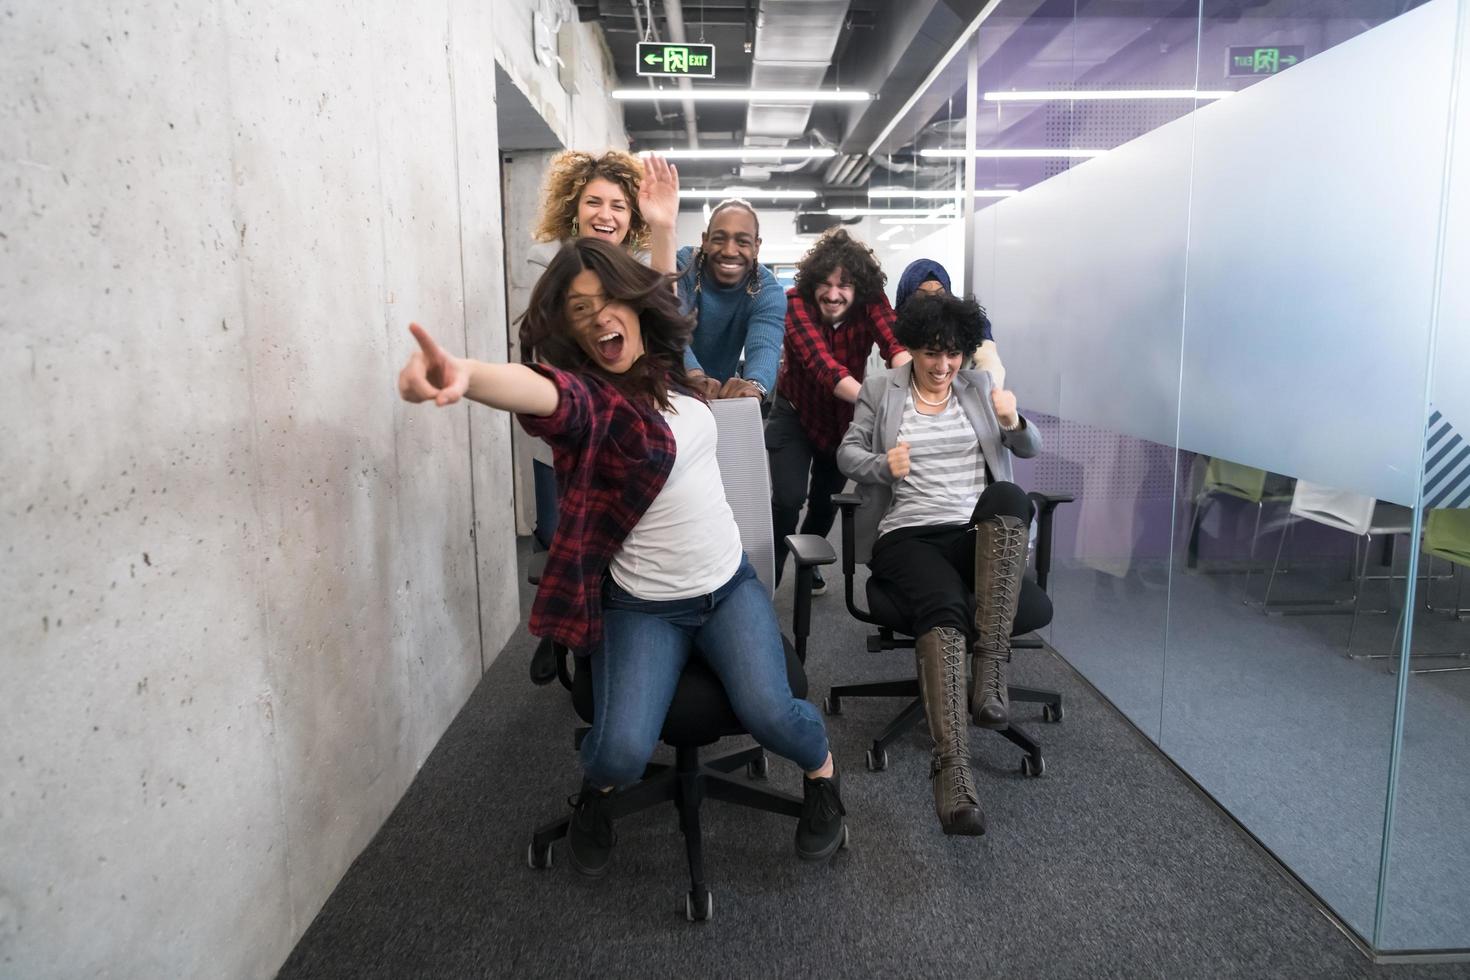 equipo de negocios multiétnico corriendo en sillas de oficina foto